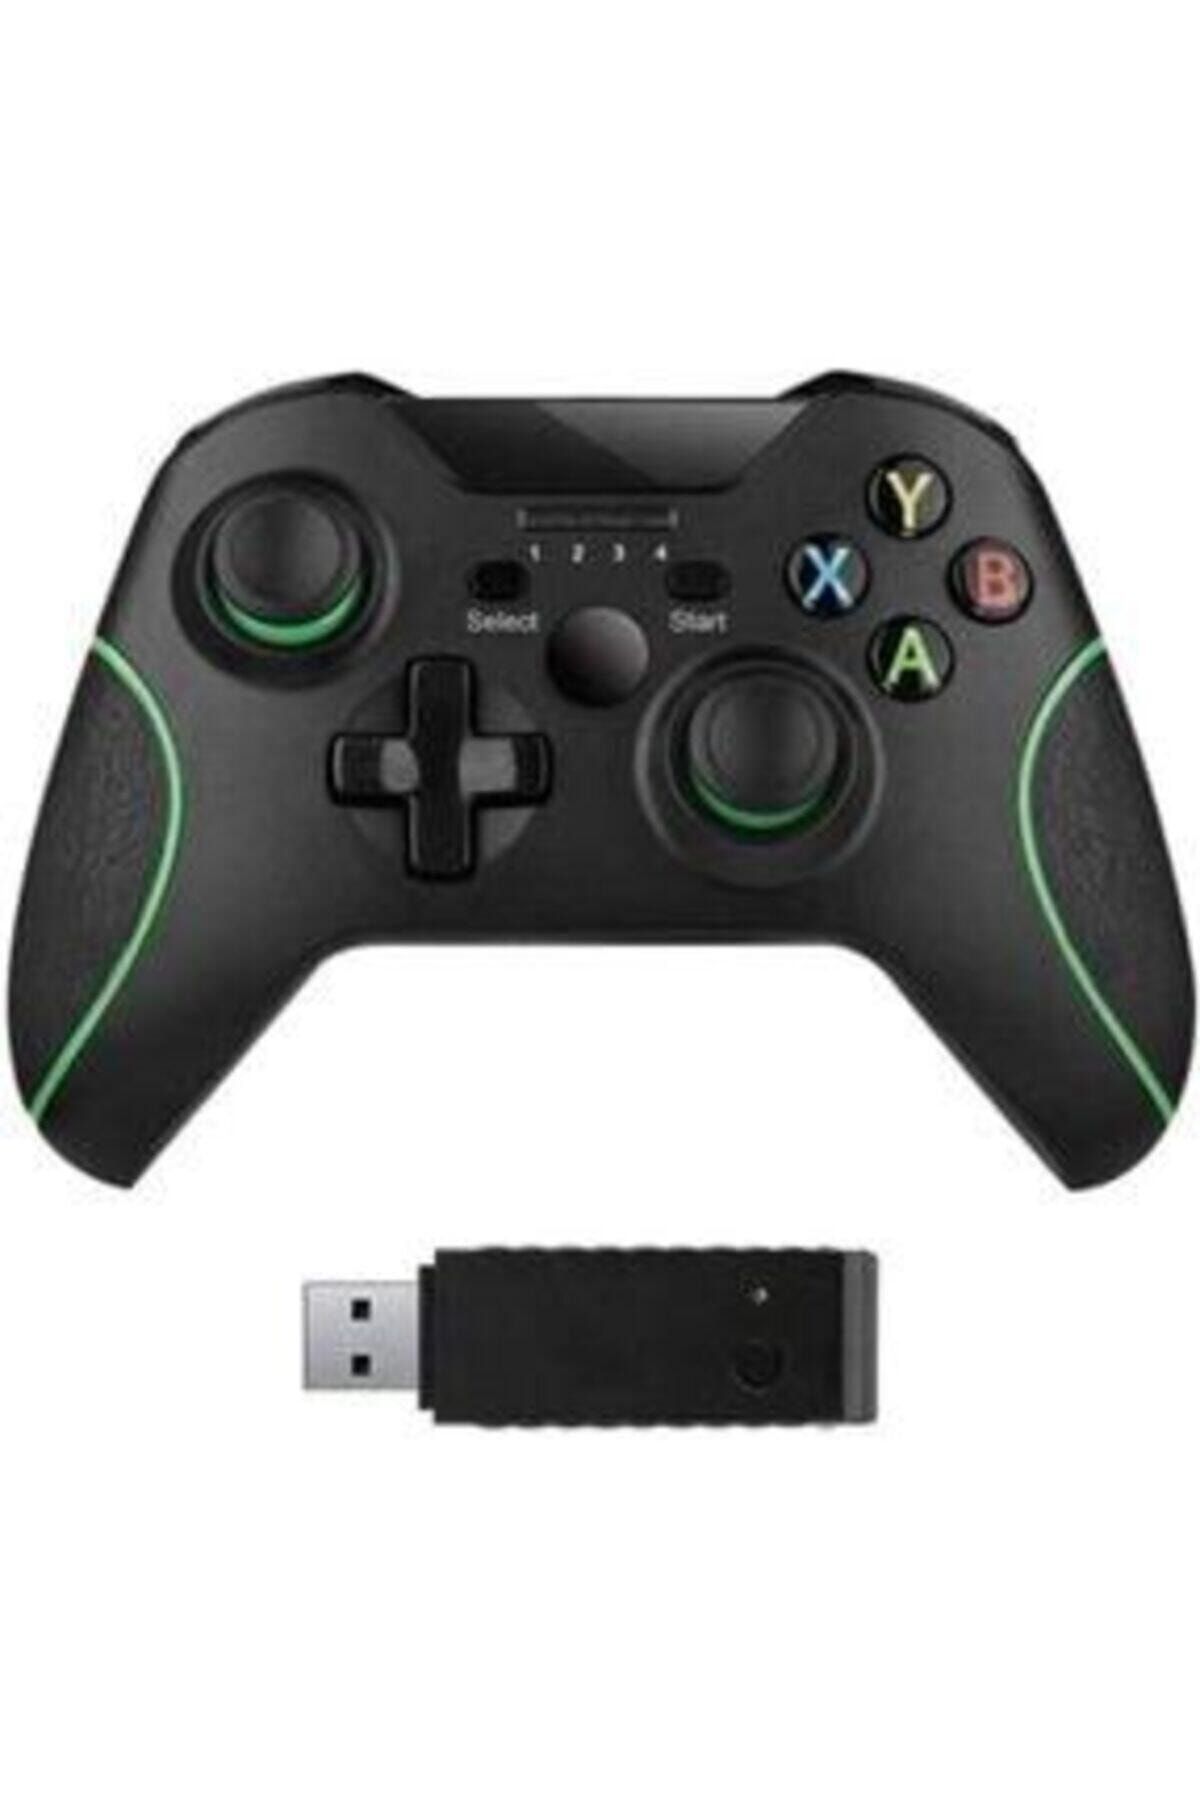 MKMTEKNOLOJİ X-one Wireless Controller Adaptör Alıcısı Dahil Ps3 Ps4 Xbox One Uyumlu